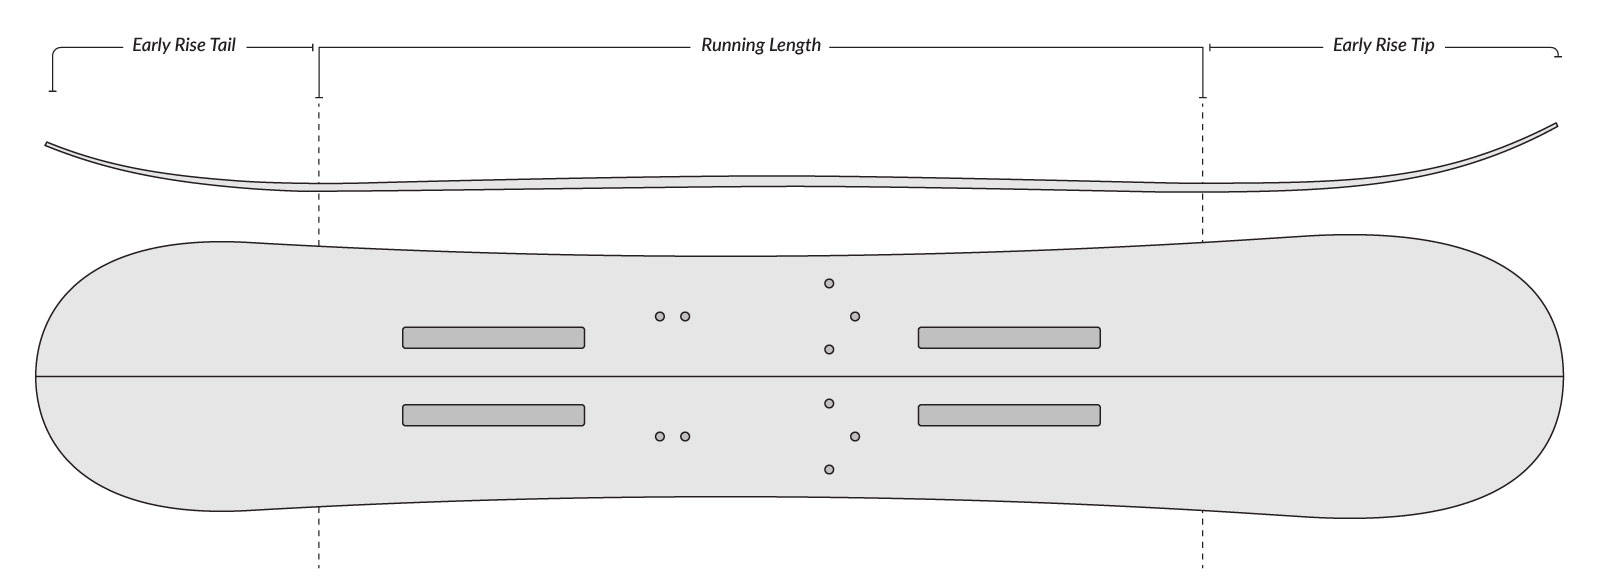 Voile Revelator Splitboard - Discontinued Graphic Camber Profile